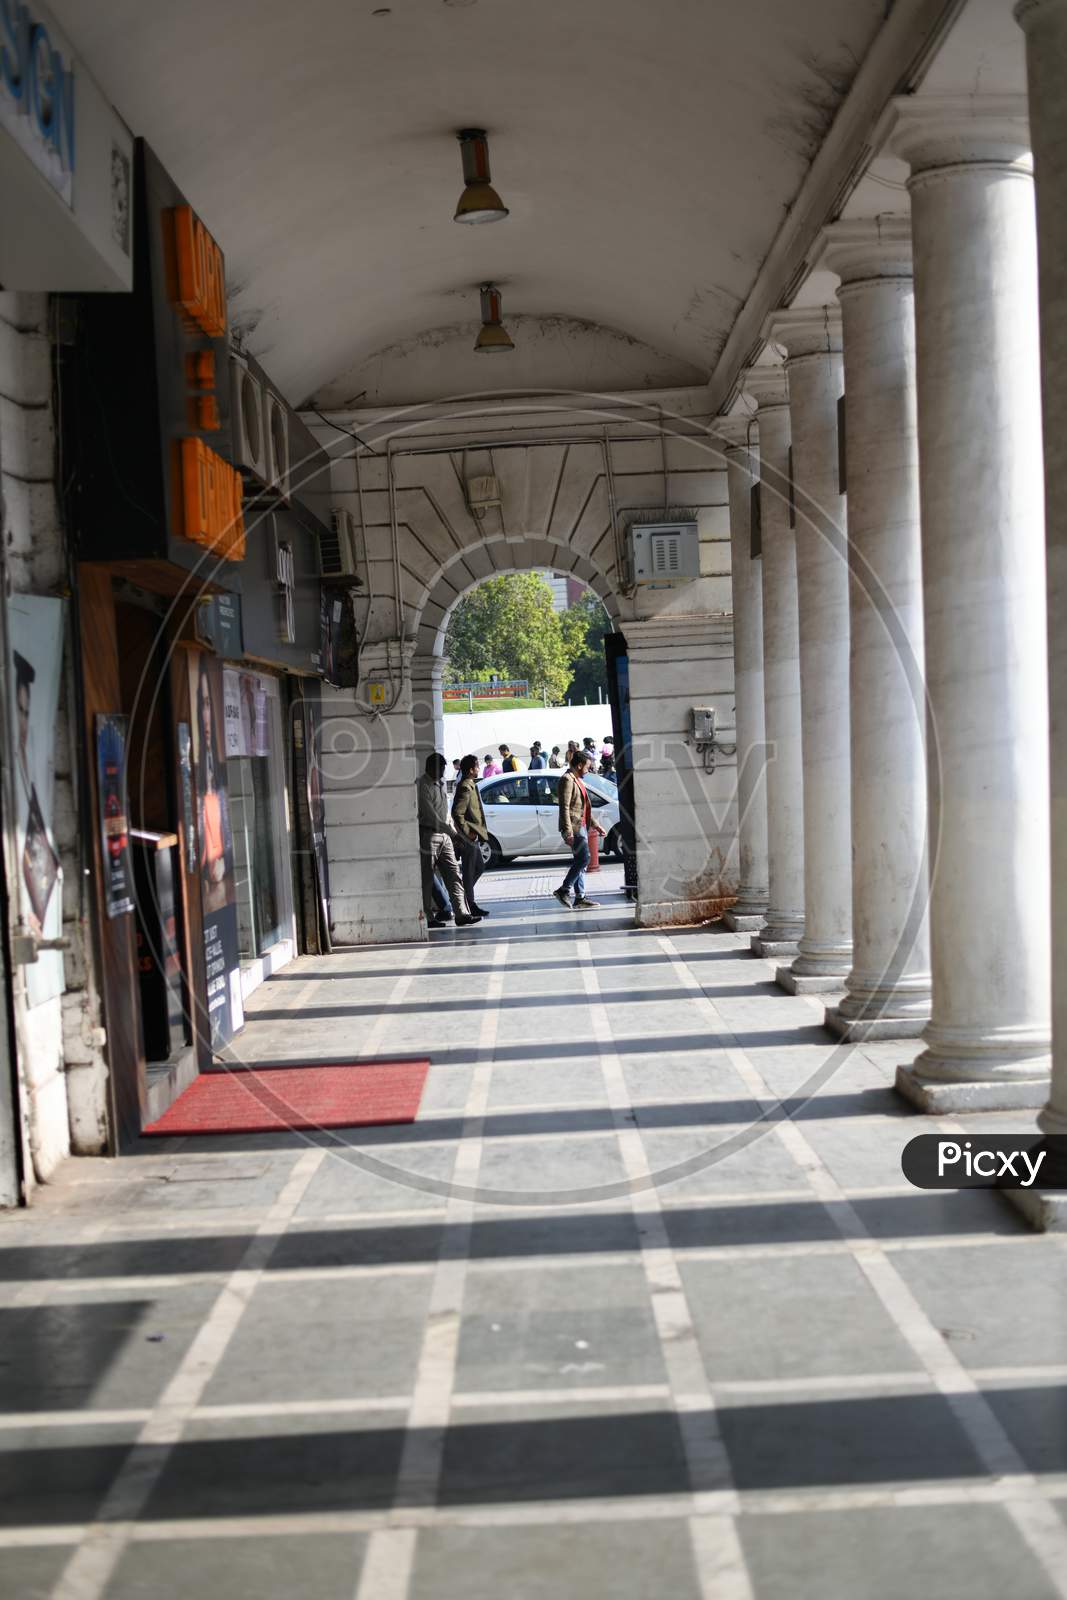 A Shopping Corridor With Pillars And Pedestrians Walking Along The Corridor